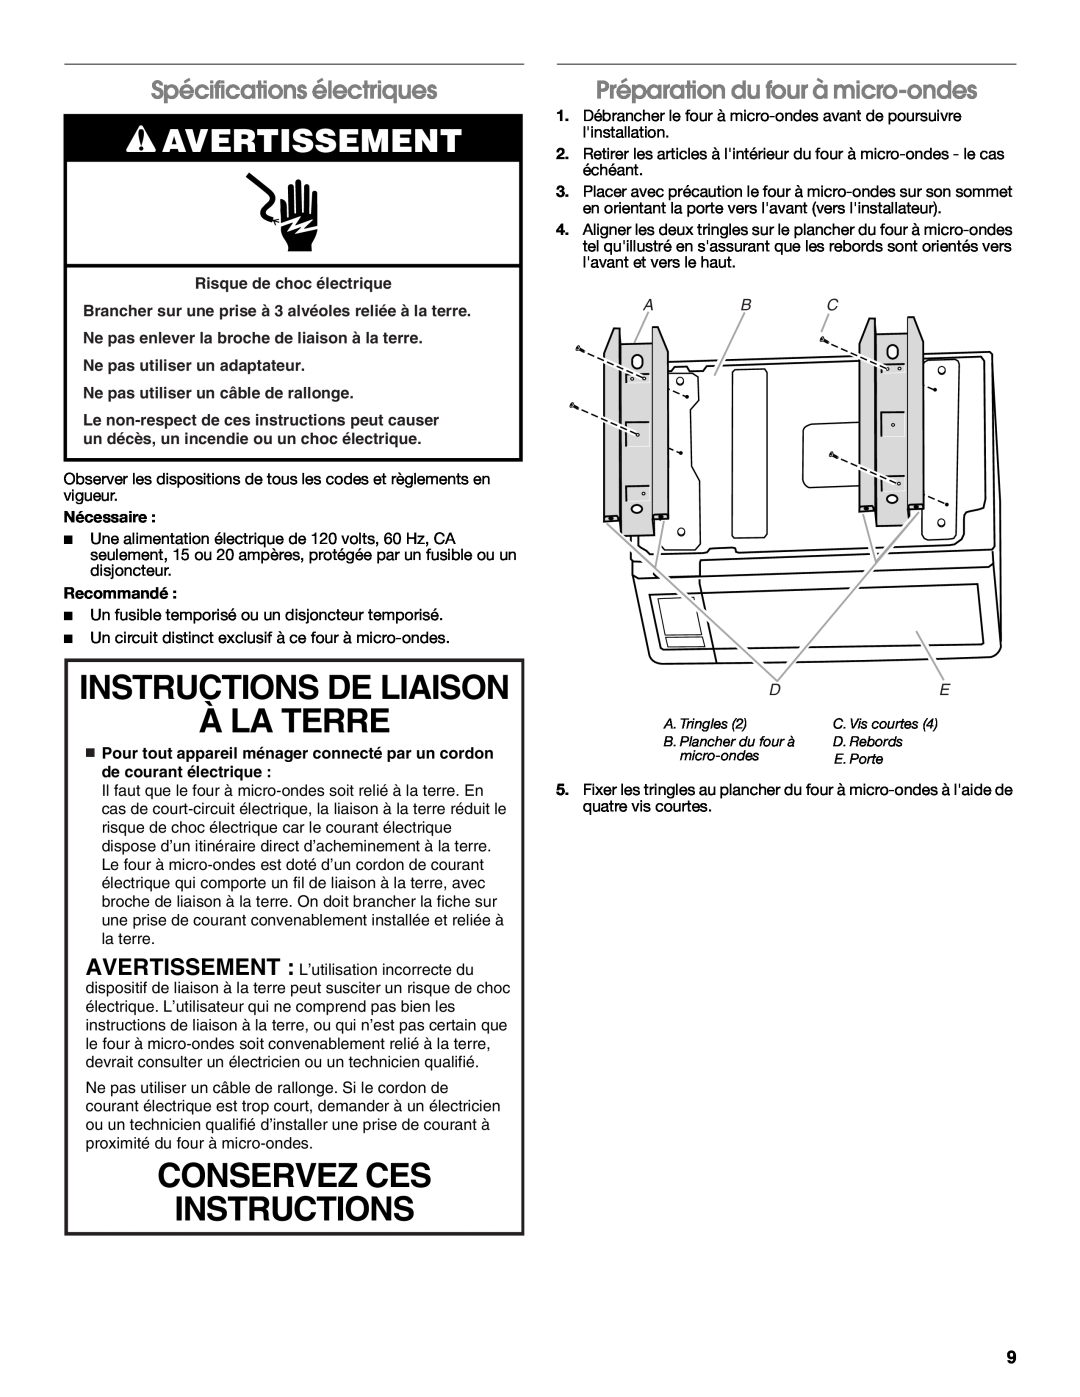 Whirlpool MK2167 Instructions De Liaison À La Terre, Conservez Ces Instructions, Avertissement, Spécifications électriques 